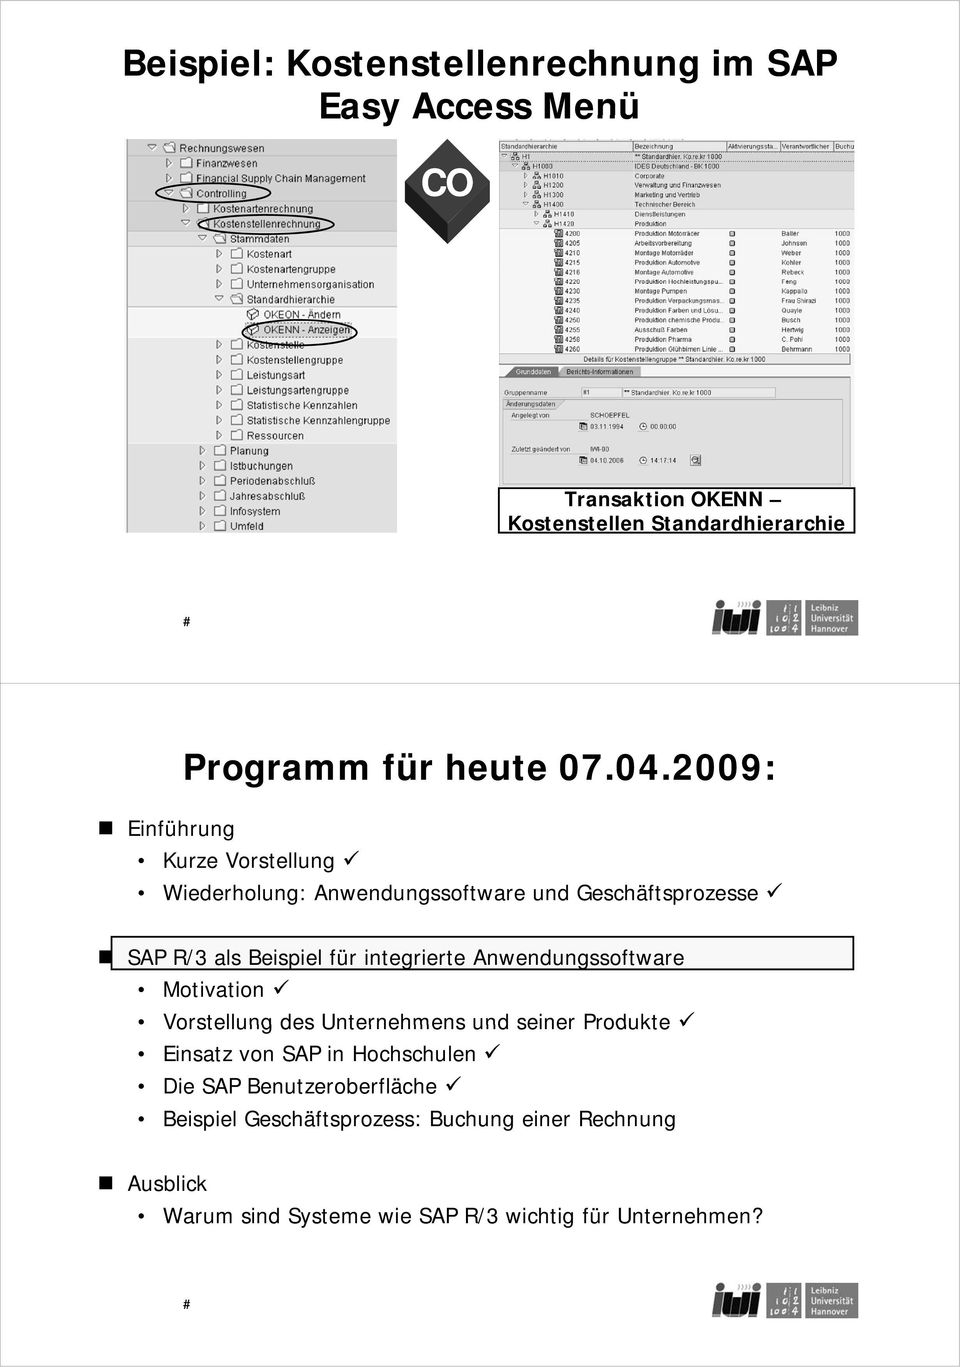 2009: Einführung Kurze Vorstellung Wiederholung: Anwendungssoftware und Geschäftsprozesse SAP R/3 als Beispiel i für integrierte